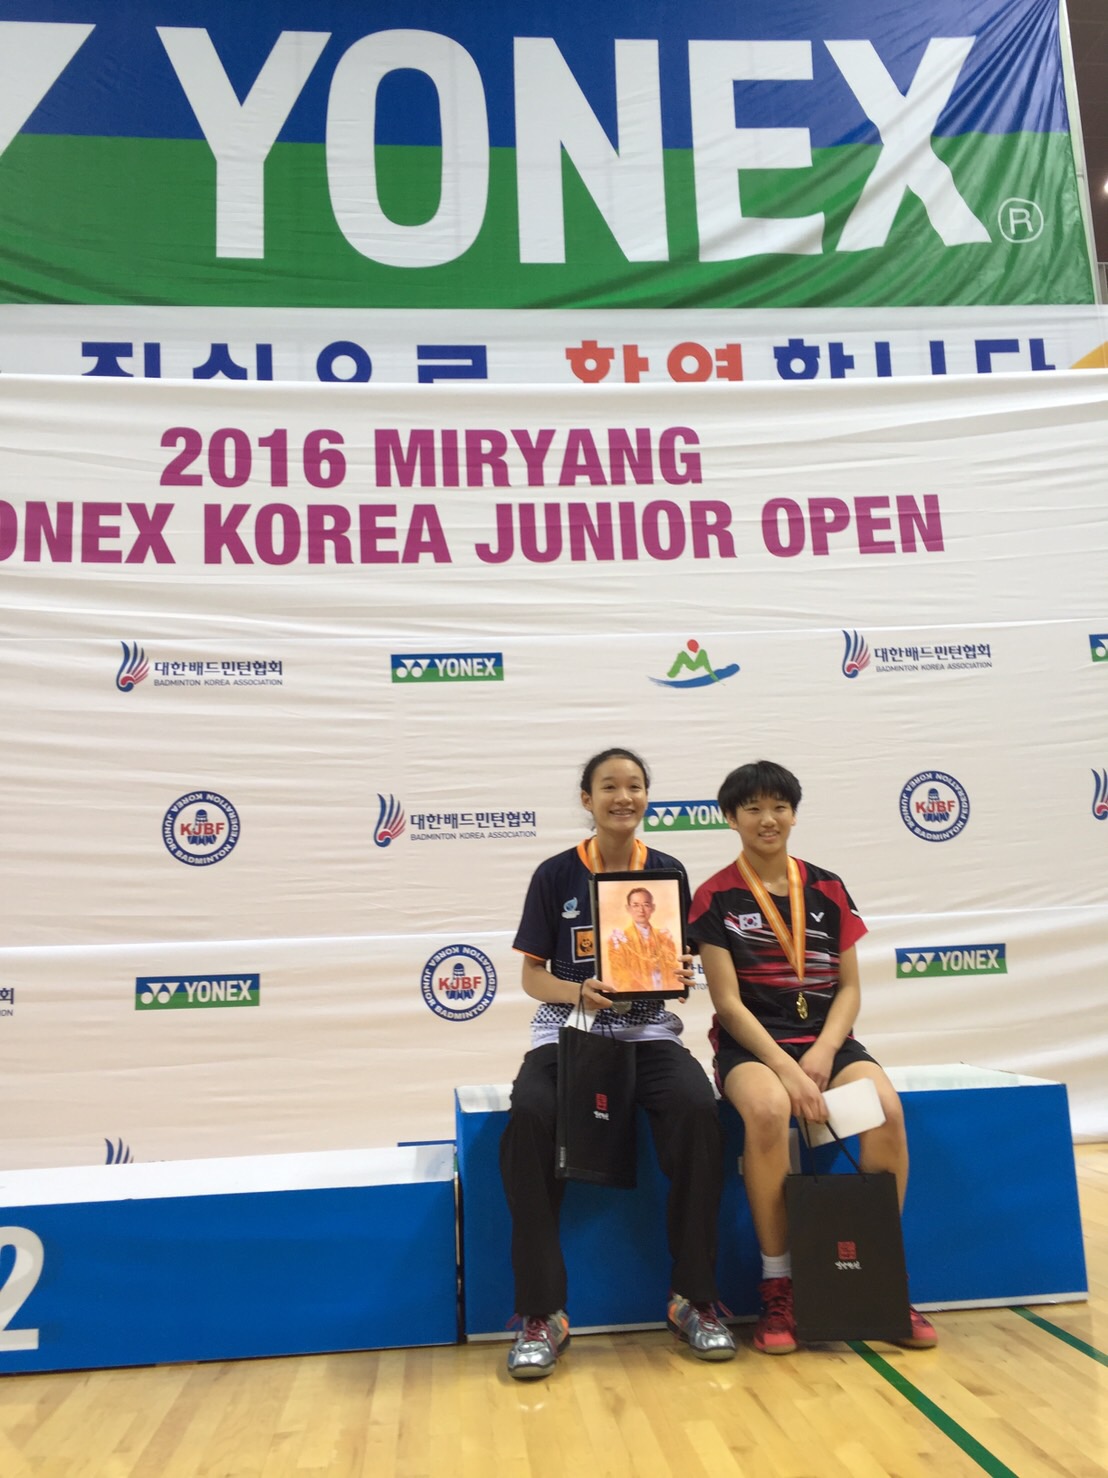 น้องมูนา แพ้ เจ้าภาพ ได้ตำแหน่งรองชนะเลิศเยาวชนที่เกาหลี